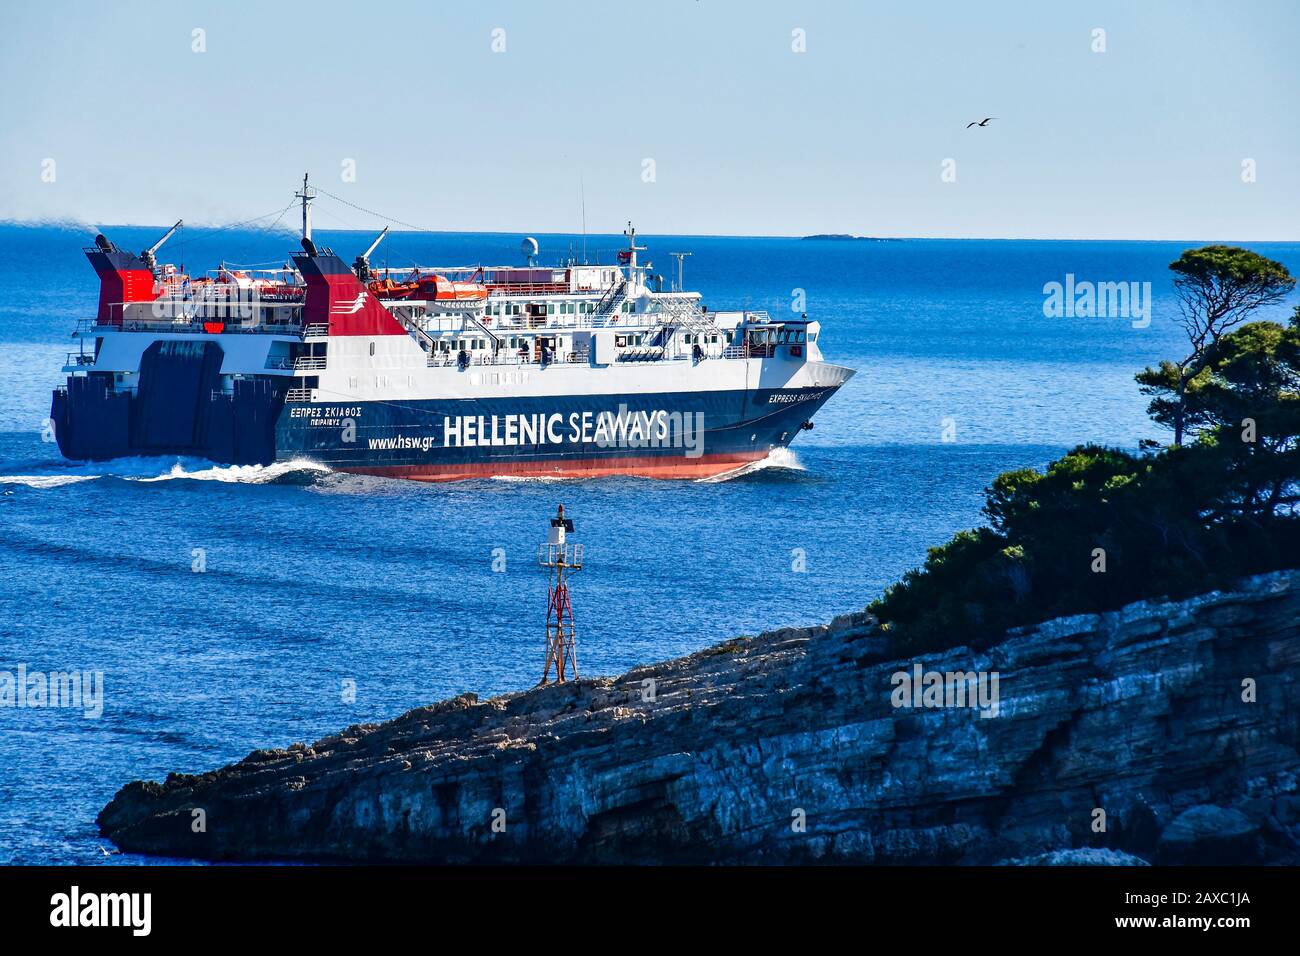 Traghetto Express Skiathos da Hellenic Seaways compagnia che lascia il porto di Patitiri, isola di Alonissos, Sporadi, Grecia Foto Stock